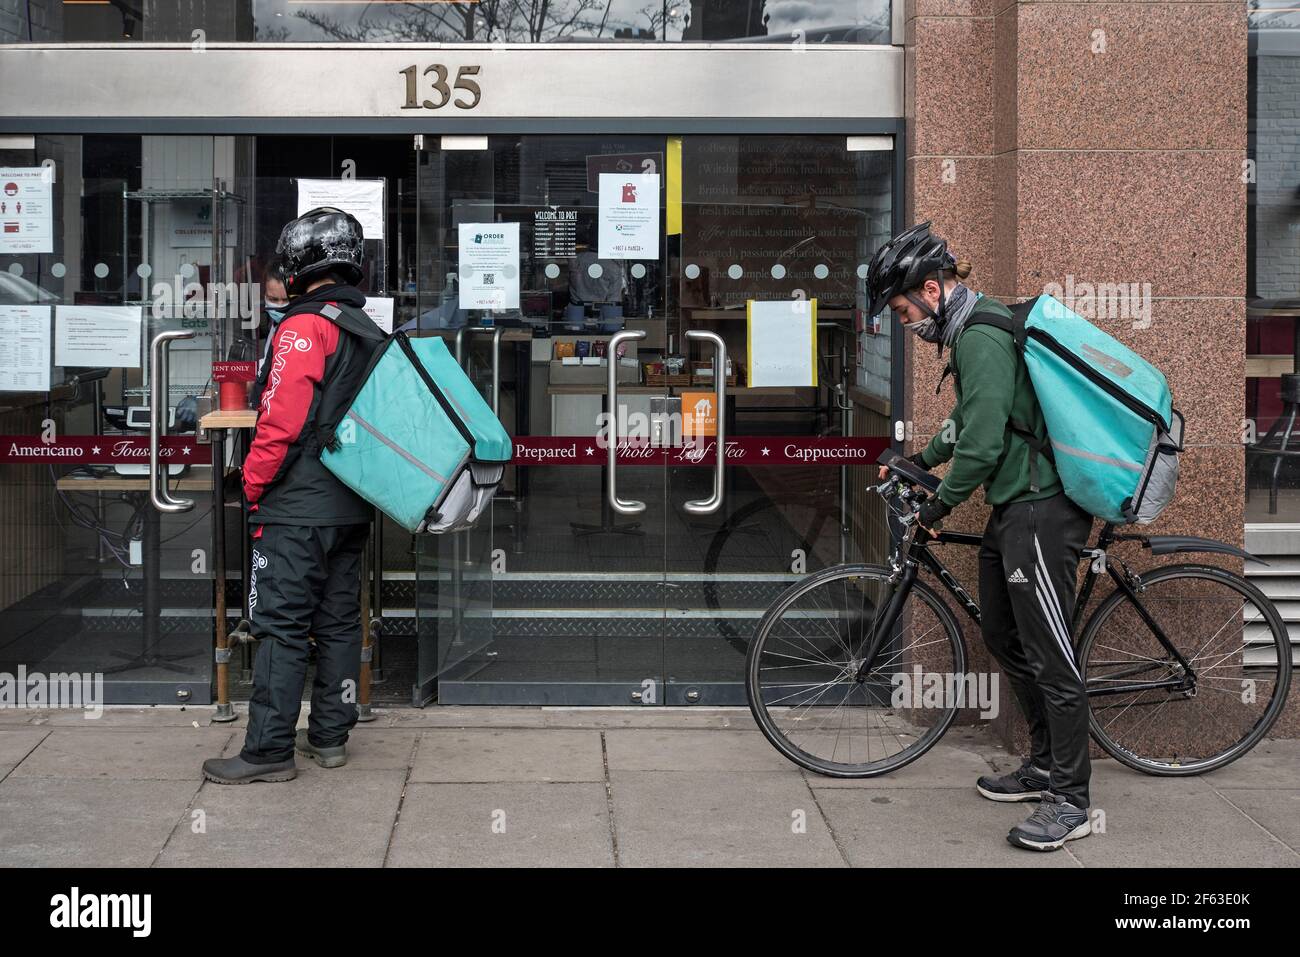 Les passagers de livraison de Deliveroo sont en file d'attente dans une succursale de PRET a Manger sur Princes Street, Édimbourg, Écosse, Royaume-Uni. Banque D'Images